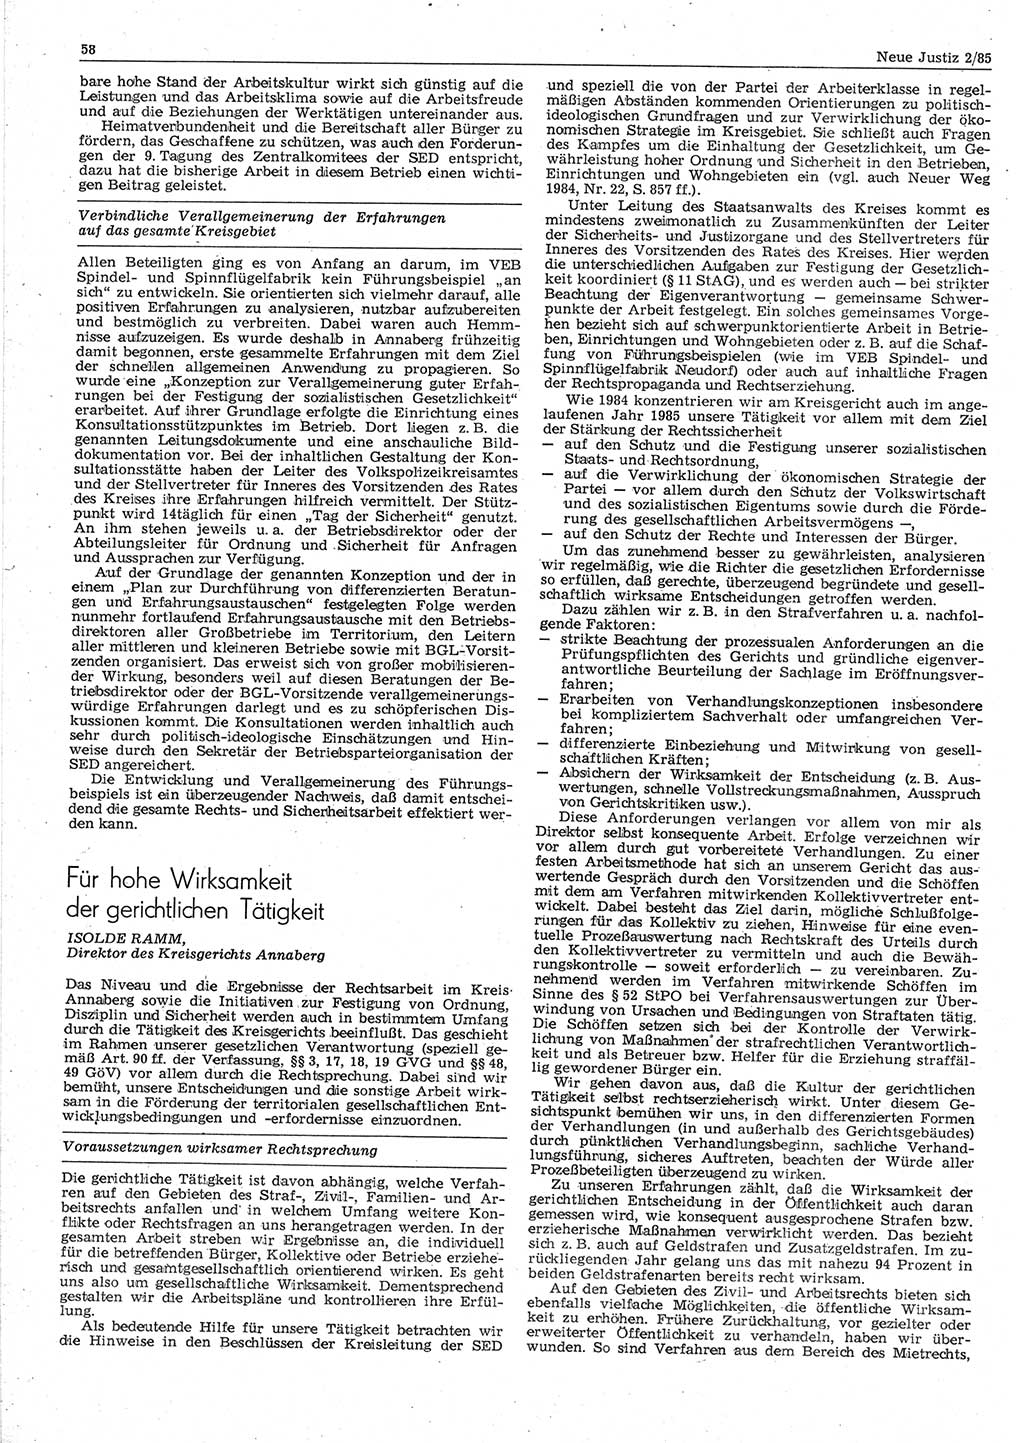 Neue Justiz (NJ), Zeitschrift für sozialistisches Recht und Gesetzlichkeit [Deutsche Demokratische Republik (DDR)], 39. Jahrgang 1985, Seite 58 (NJ DDR 1985, S. 58)